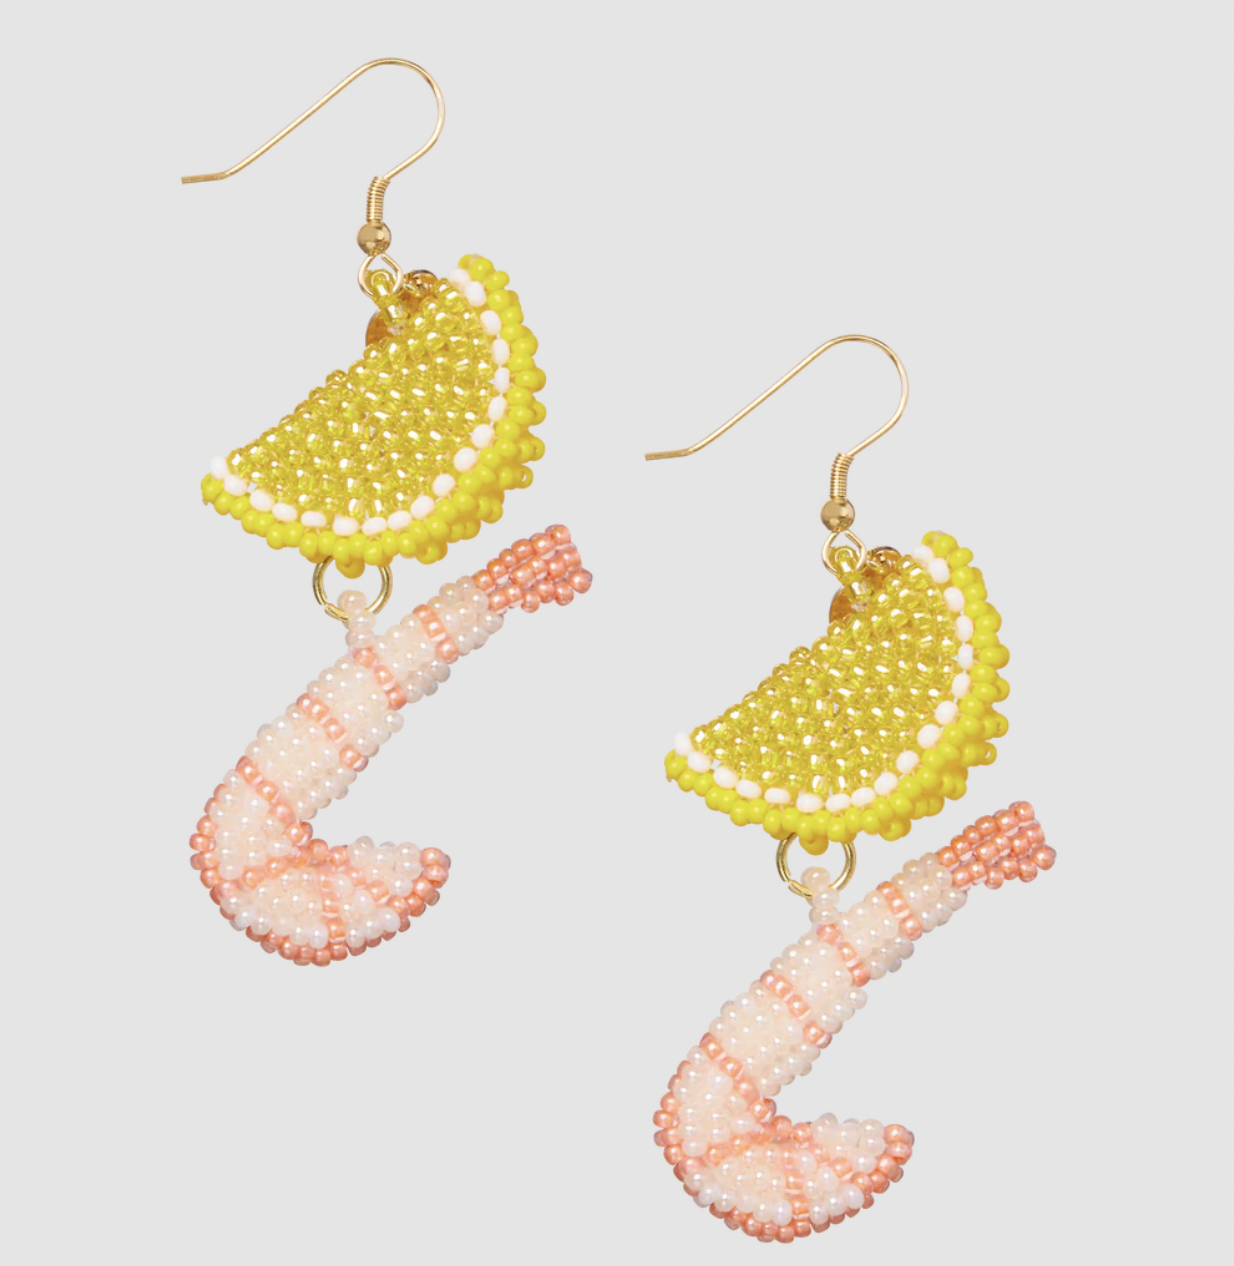 Shrimp Cocktail Earrings